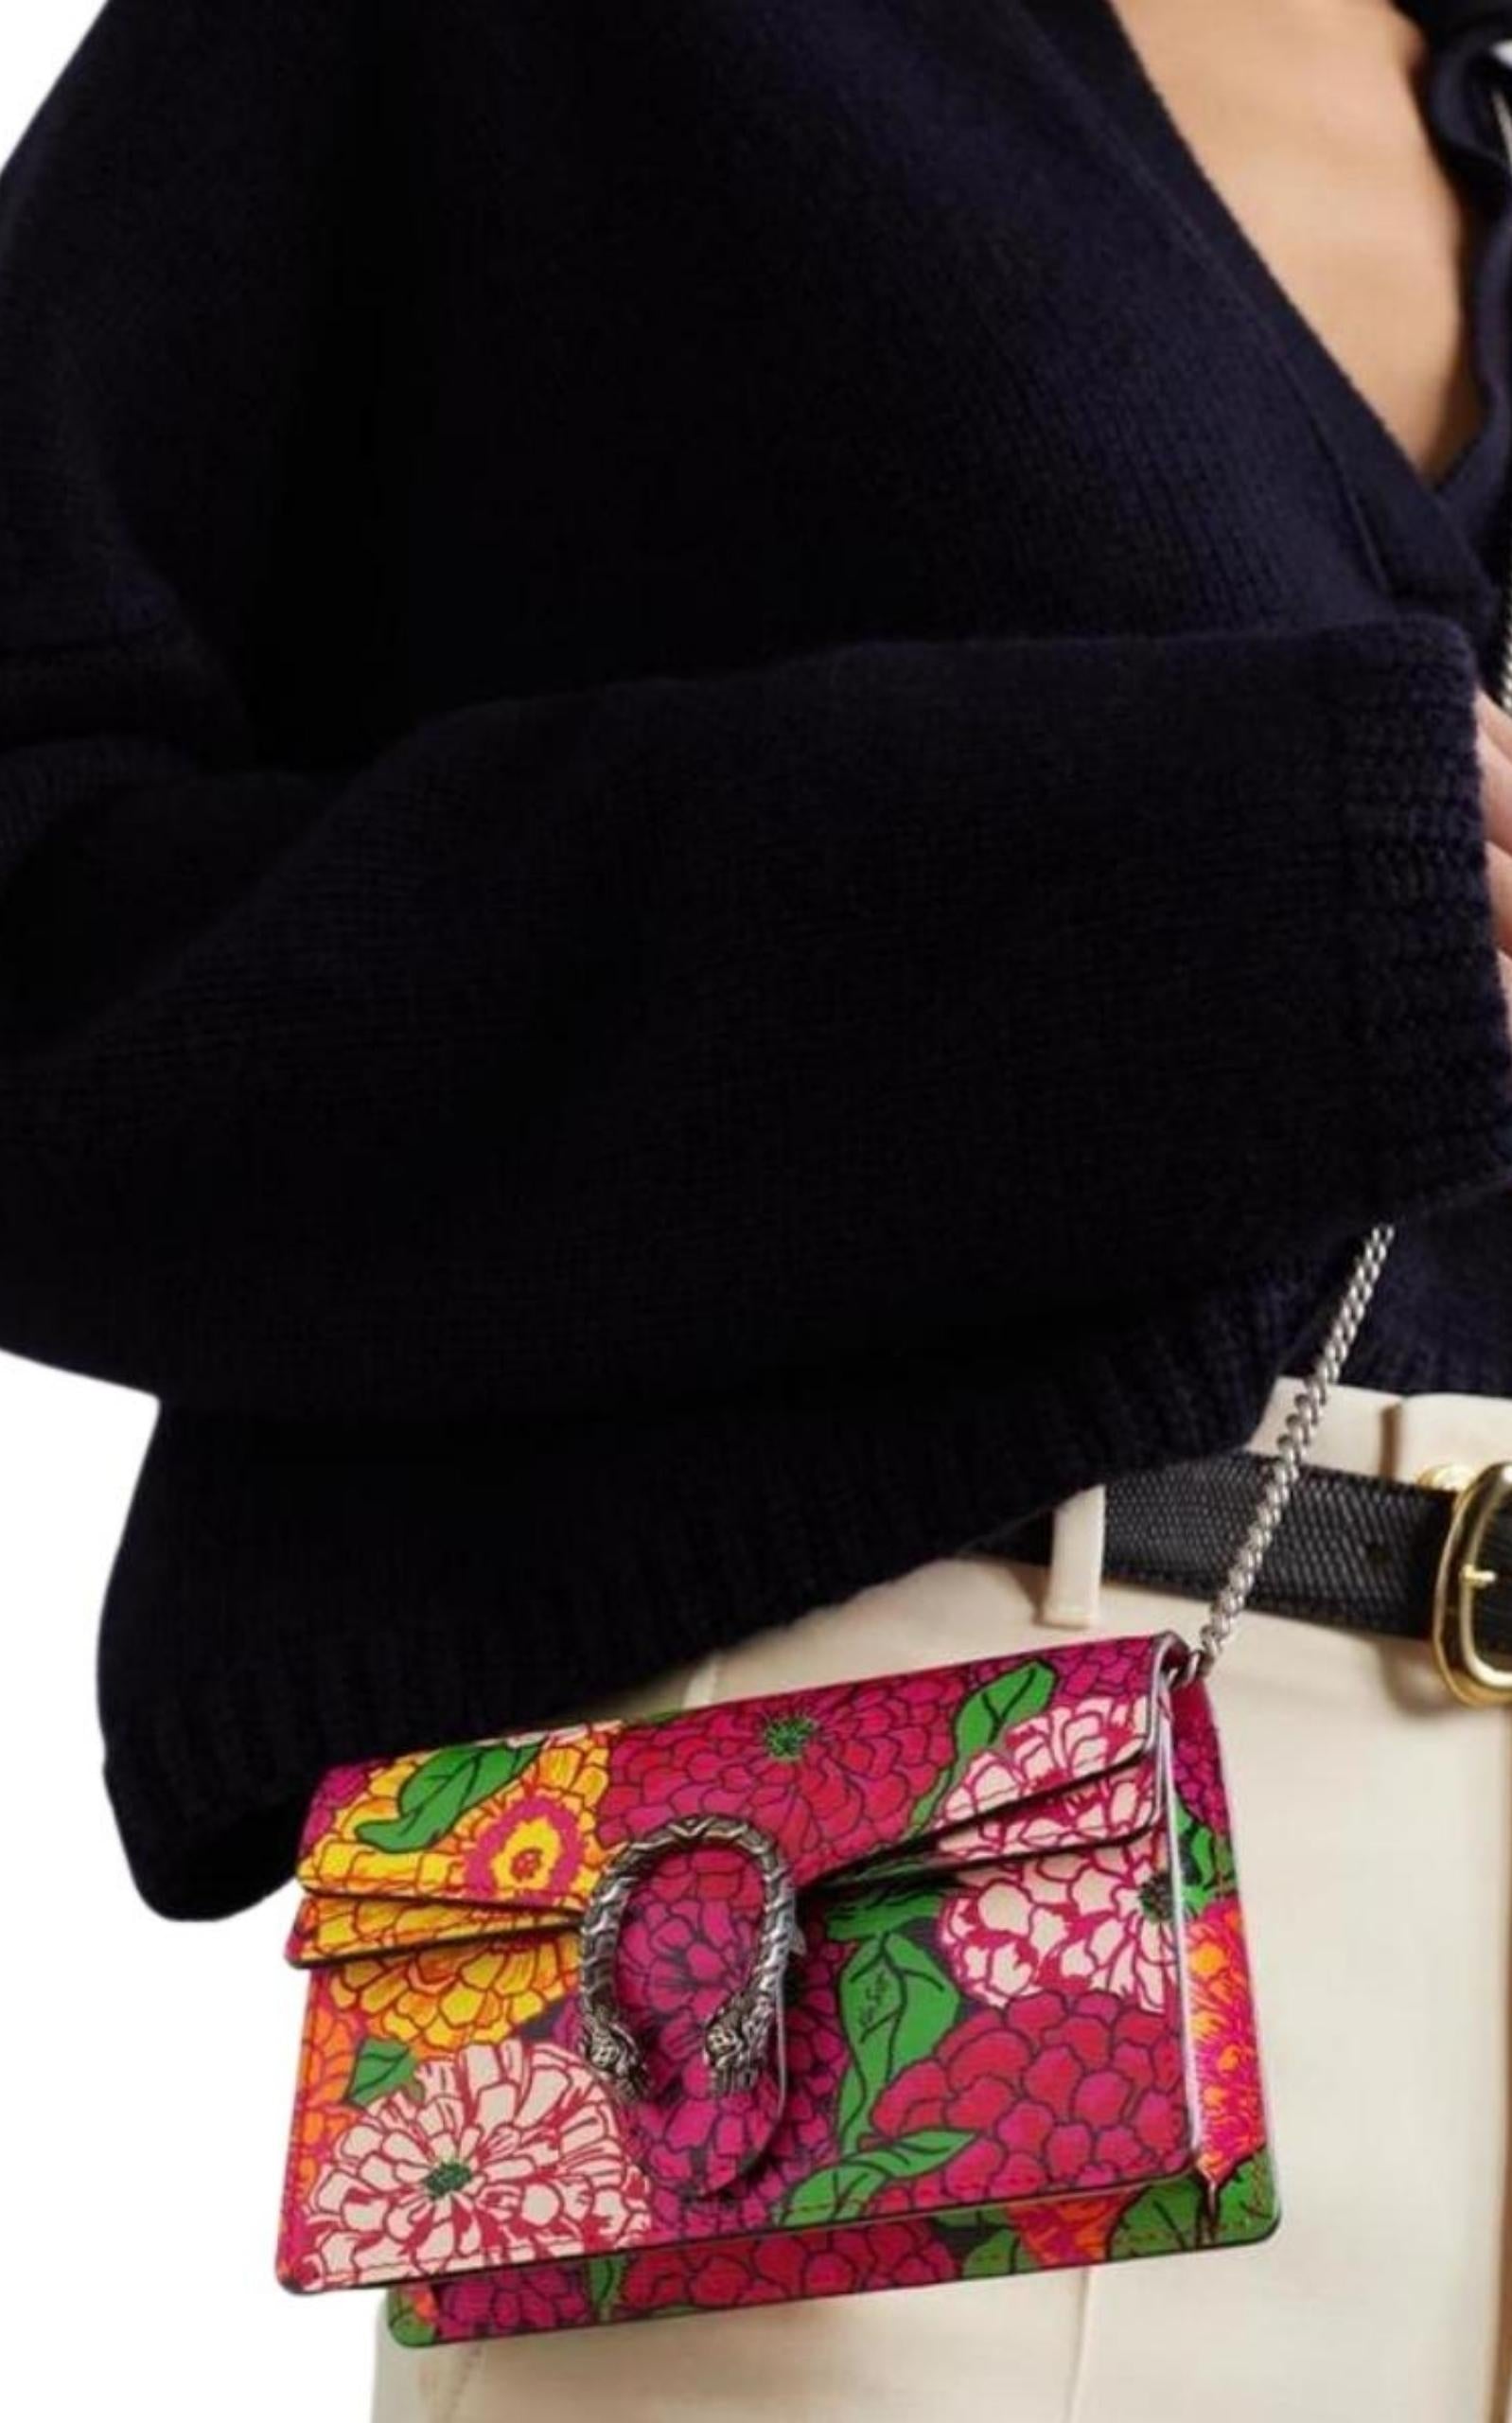 Gucci Ken Scott Dionysus Floral Print Small Shoulder Bag